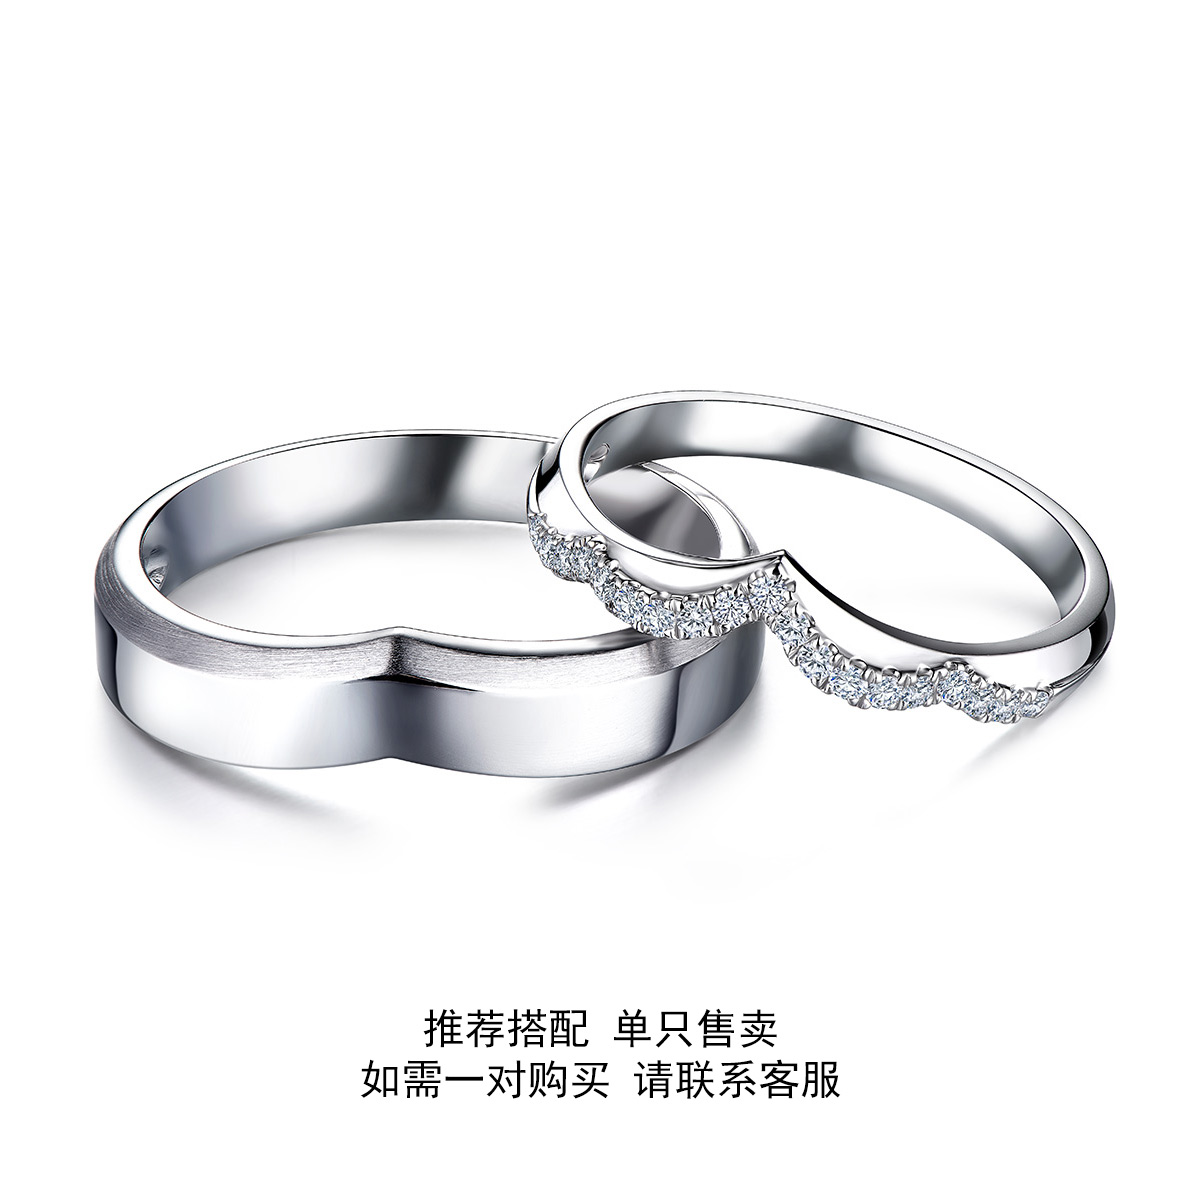 六福珠宝六福珠宝蕾丝钻戒女18K金钻石戒指结婚对戒情侣WD31766